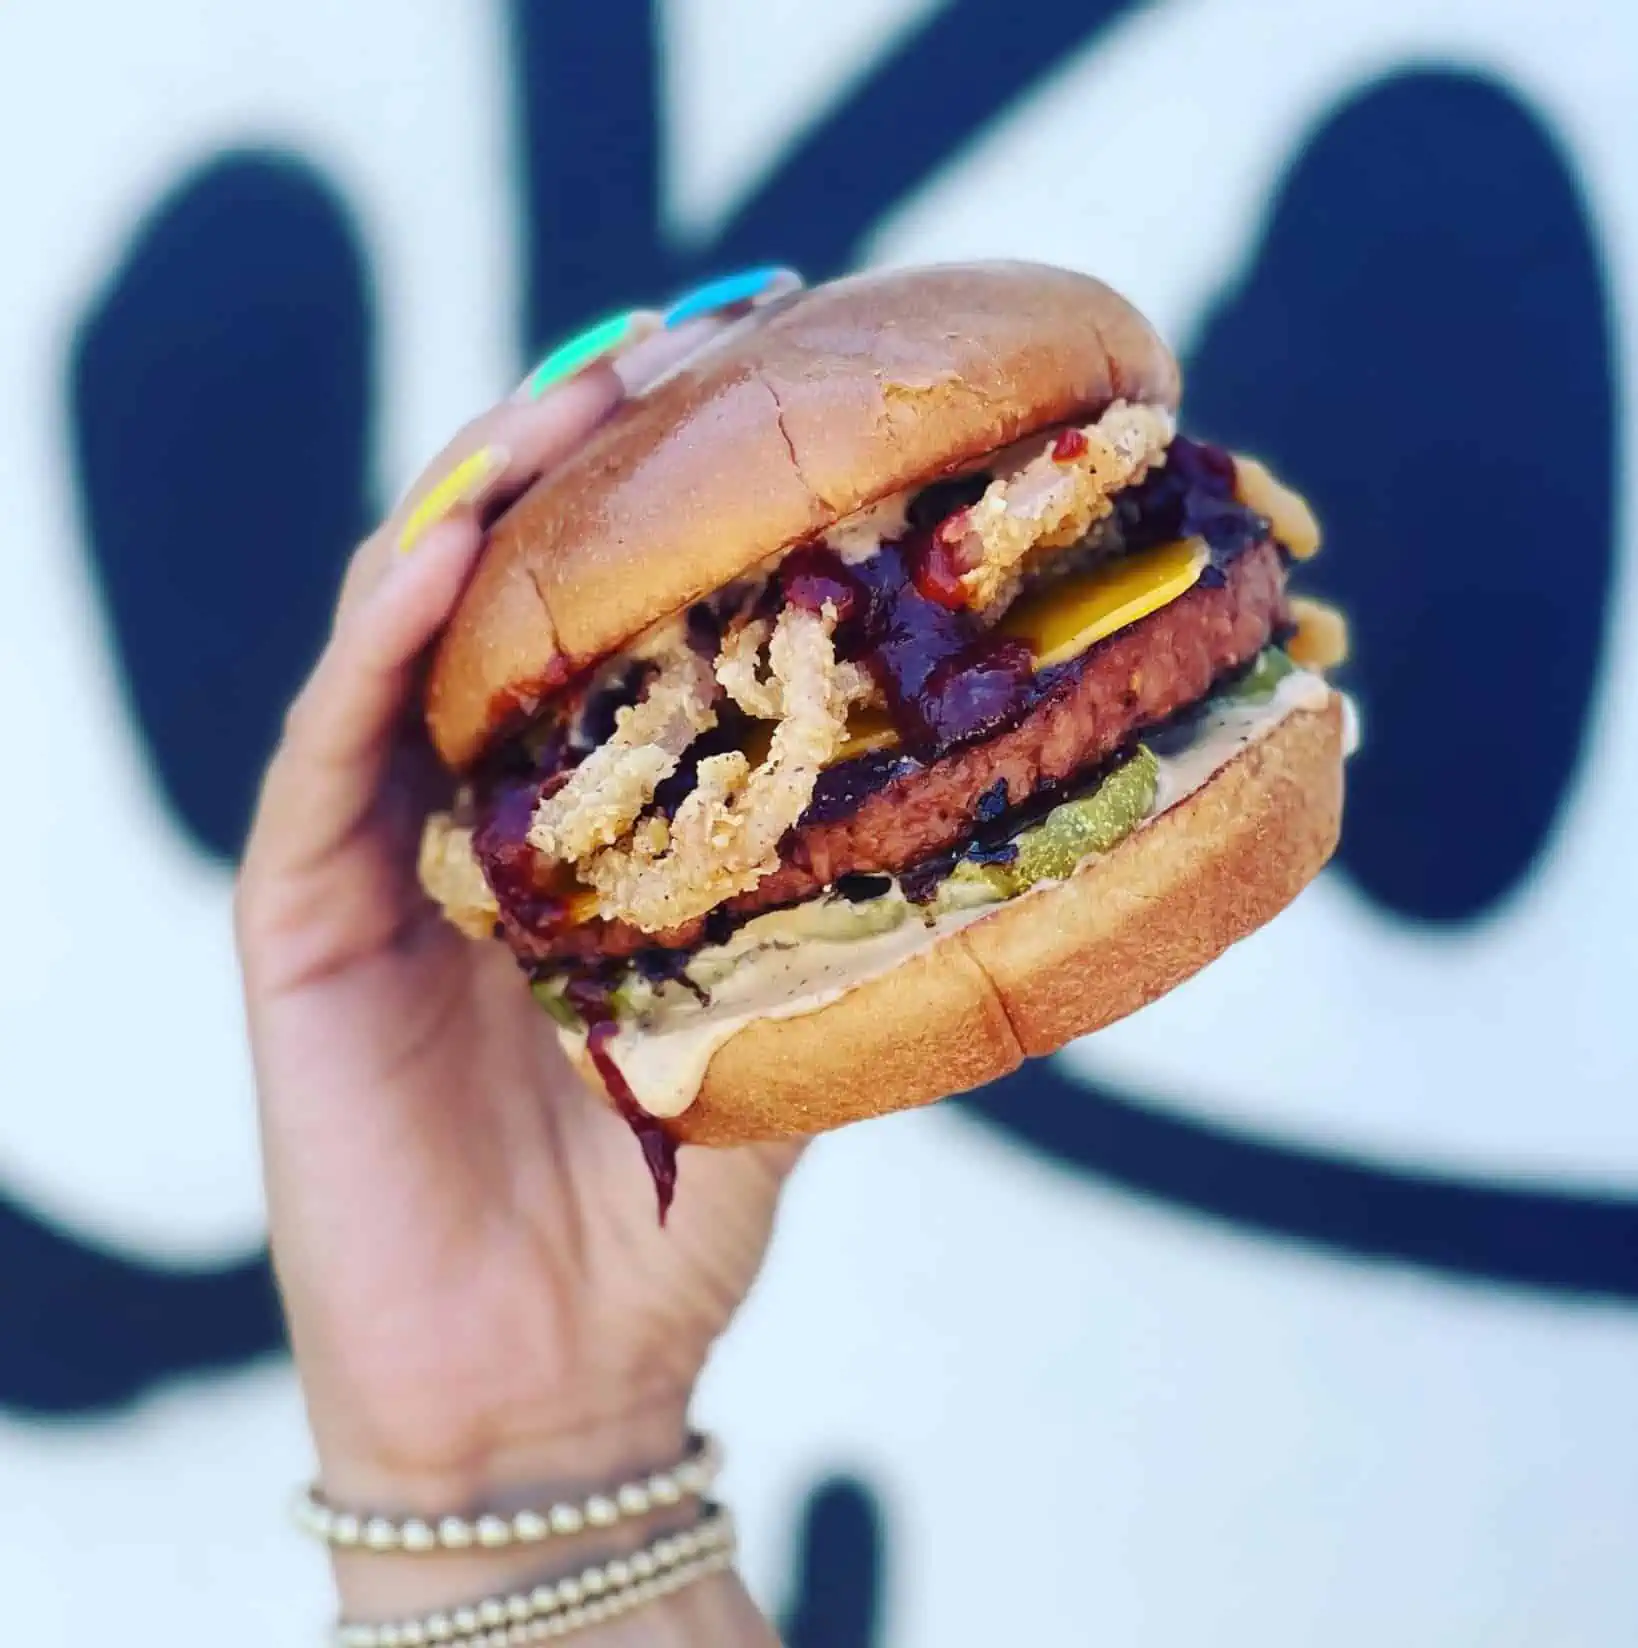 A vegan burger at Project Pollo.